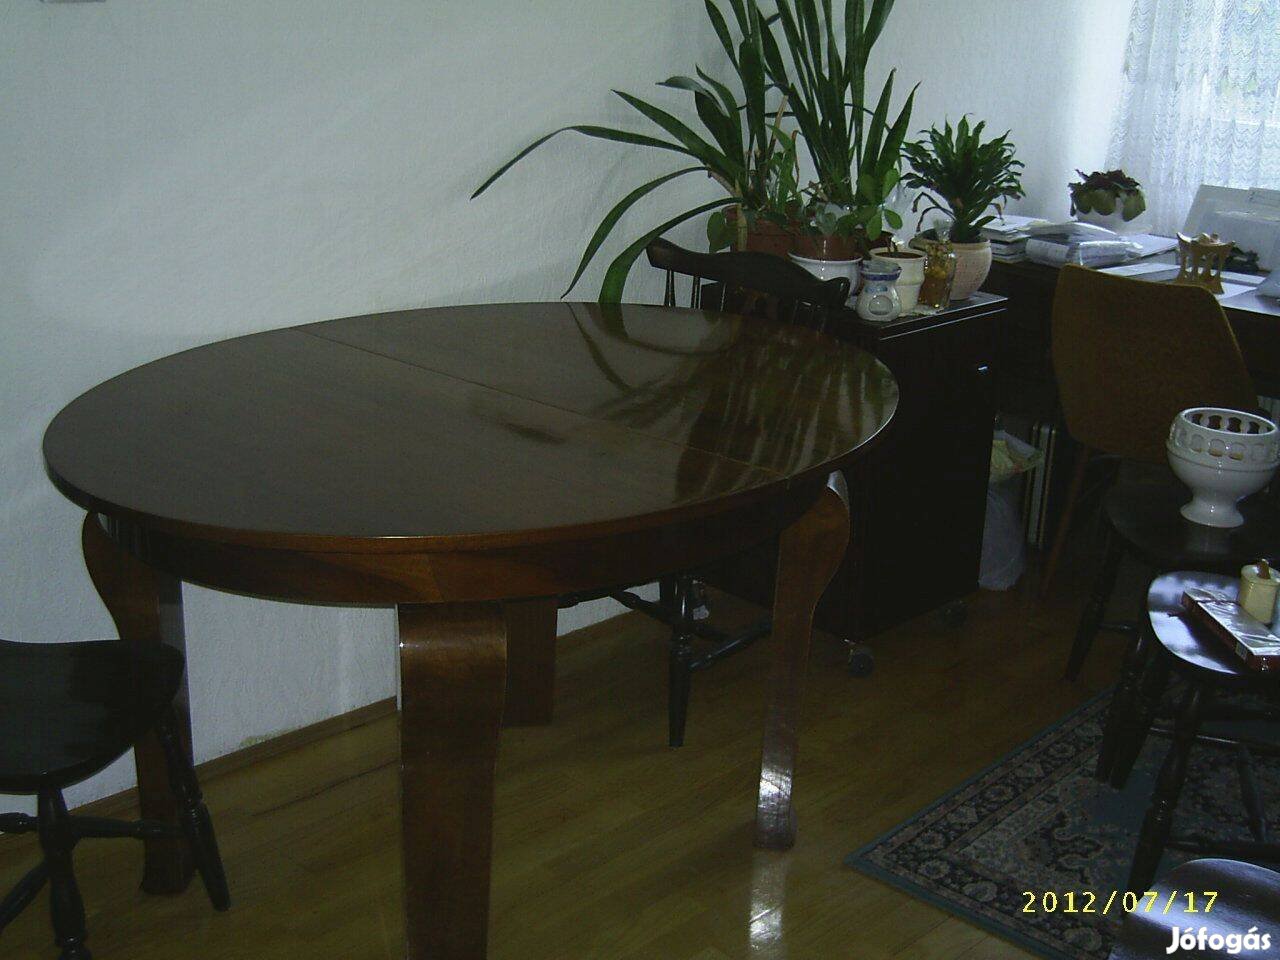 Eladó ovális szétnyitható étkező asztal /140-175 cm/6 székkel